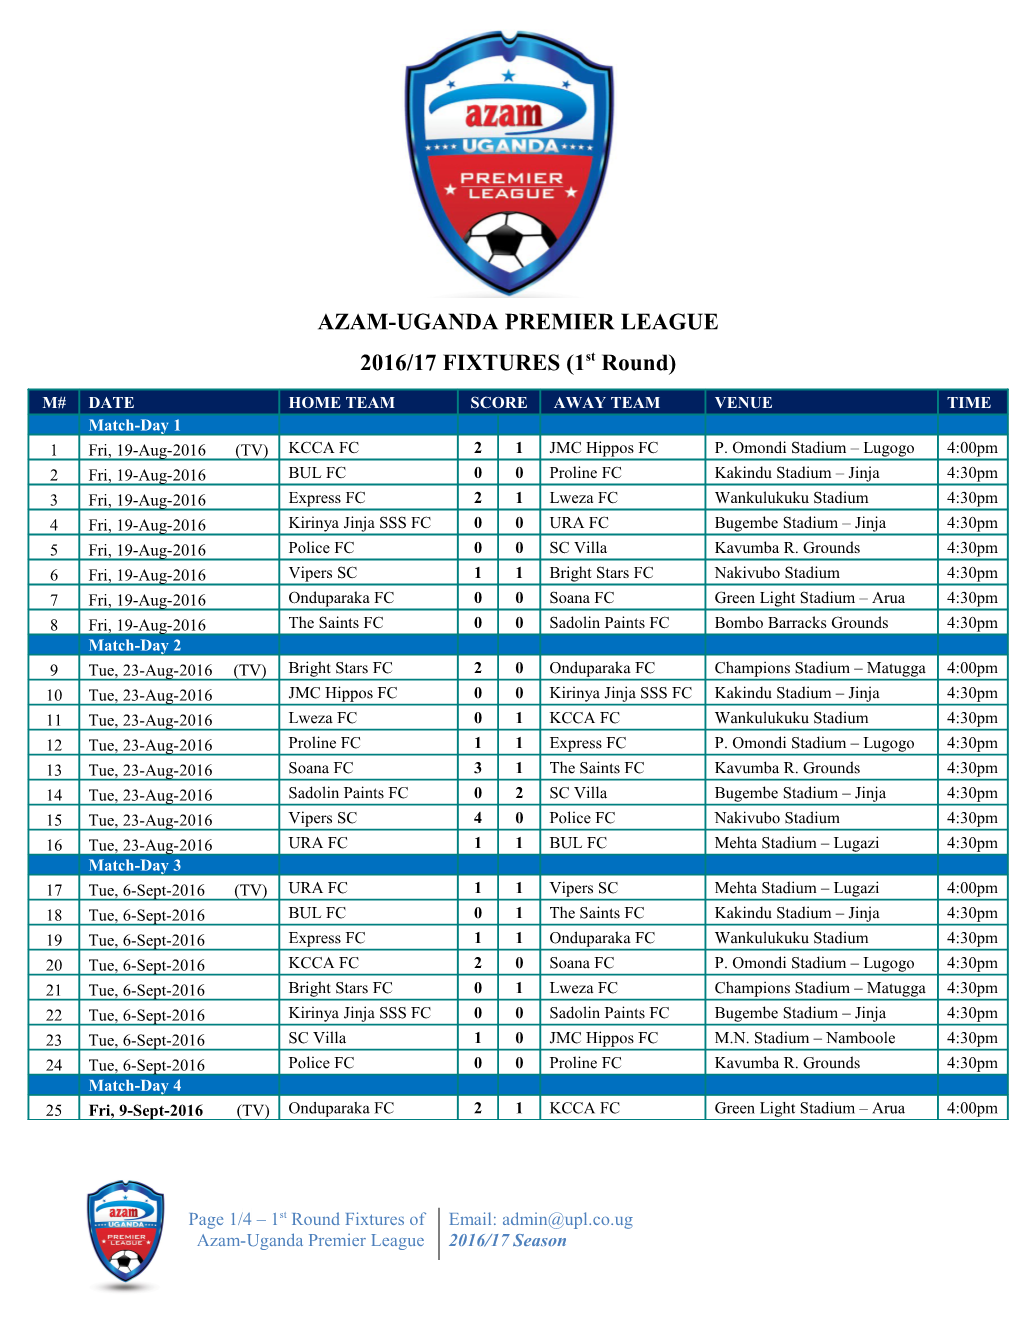 AUPL Fixtures 2016-17 Season